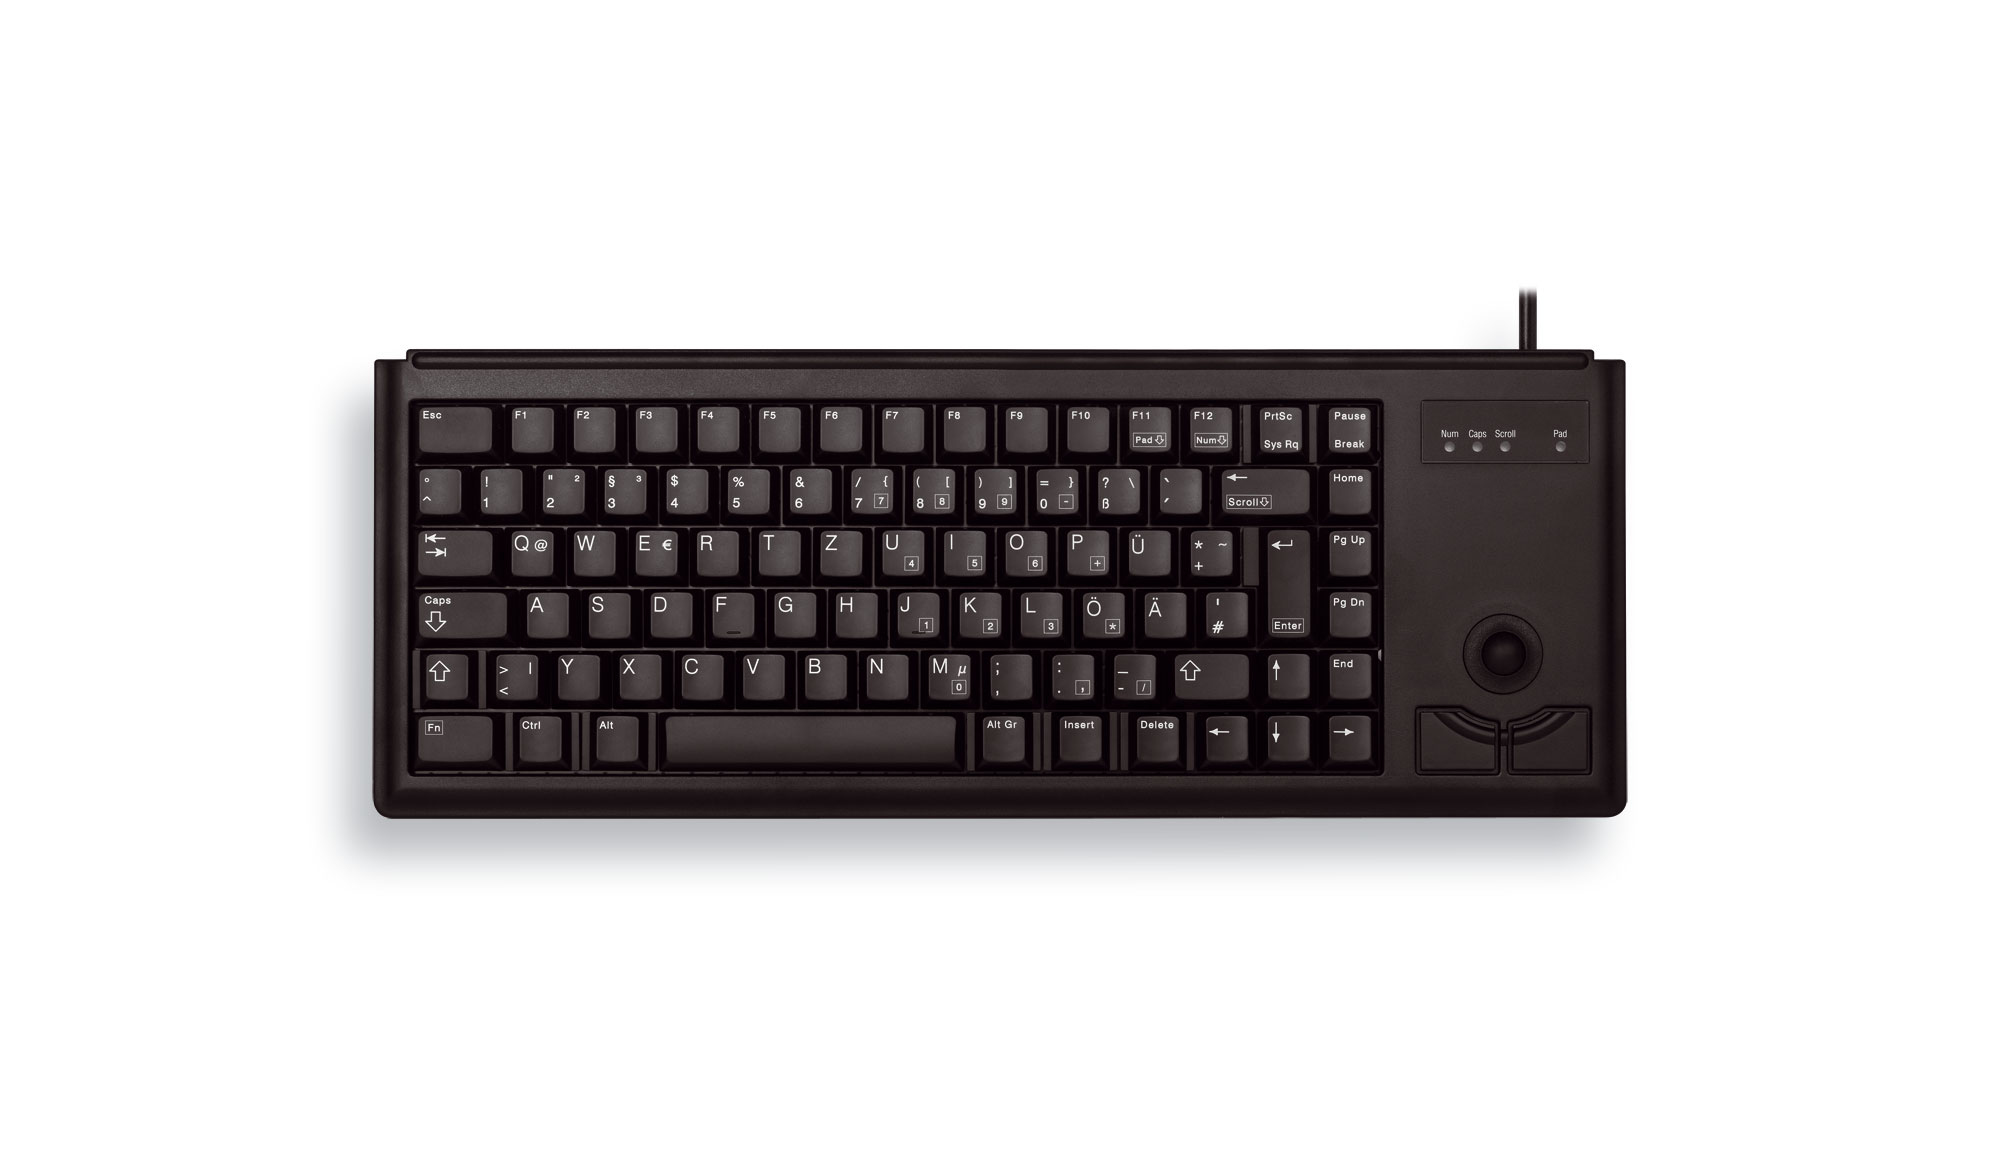 Cherry Slim Line Compact-Keyboard G84-4400 - Tastatur - 84 Tasten QWERTY - Schwarz